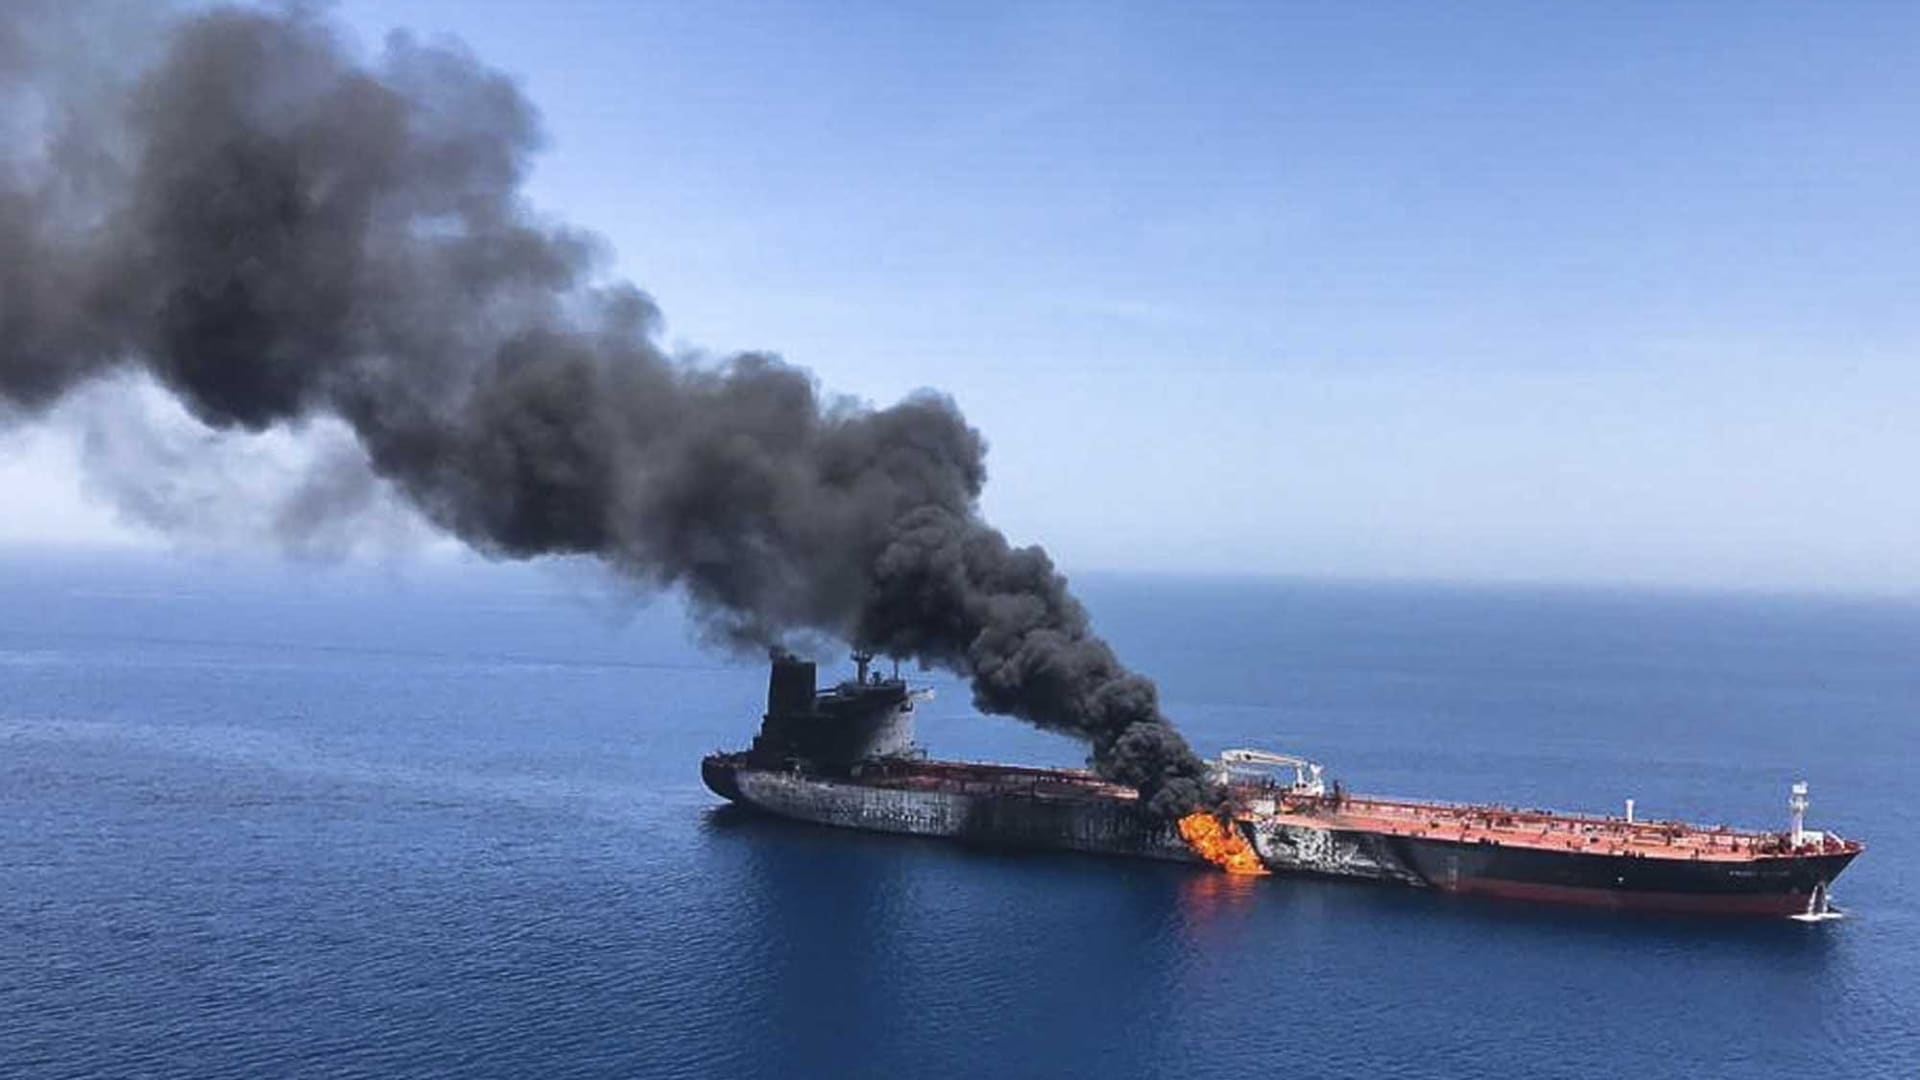  أمريكا تنشر فيديو "نزع" زورق إيراني للغم على سفينة بخليج عُمان